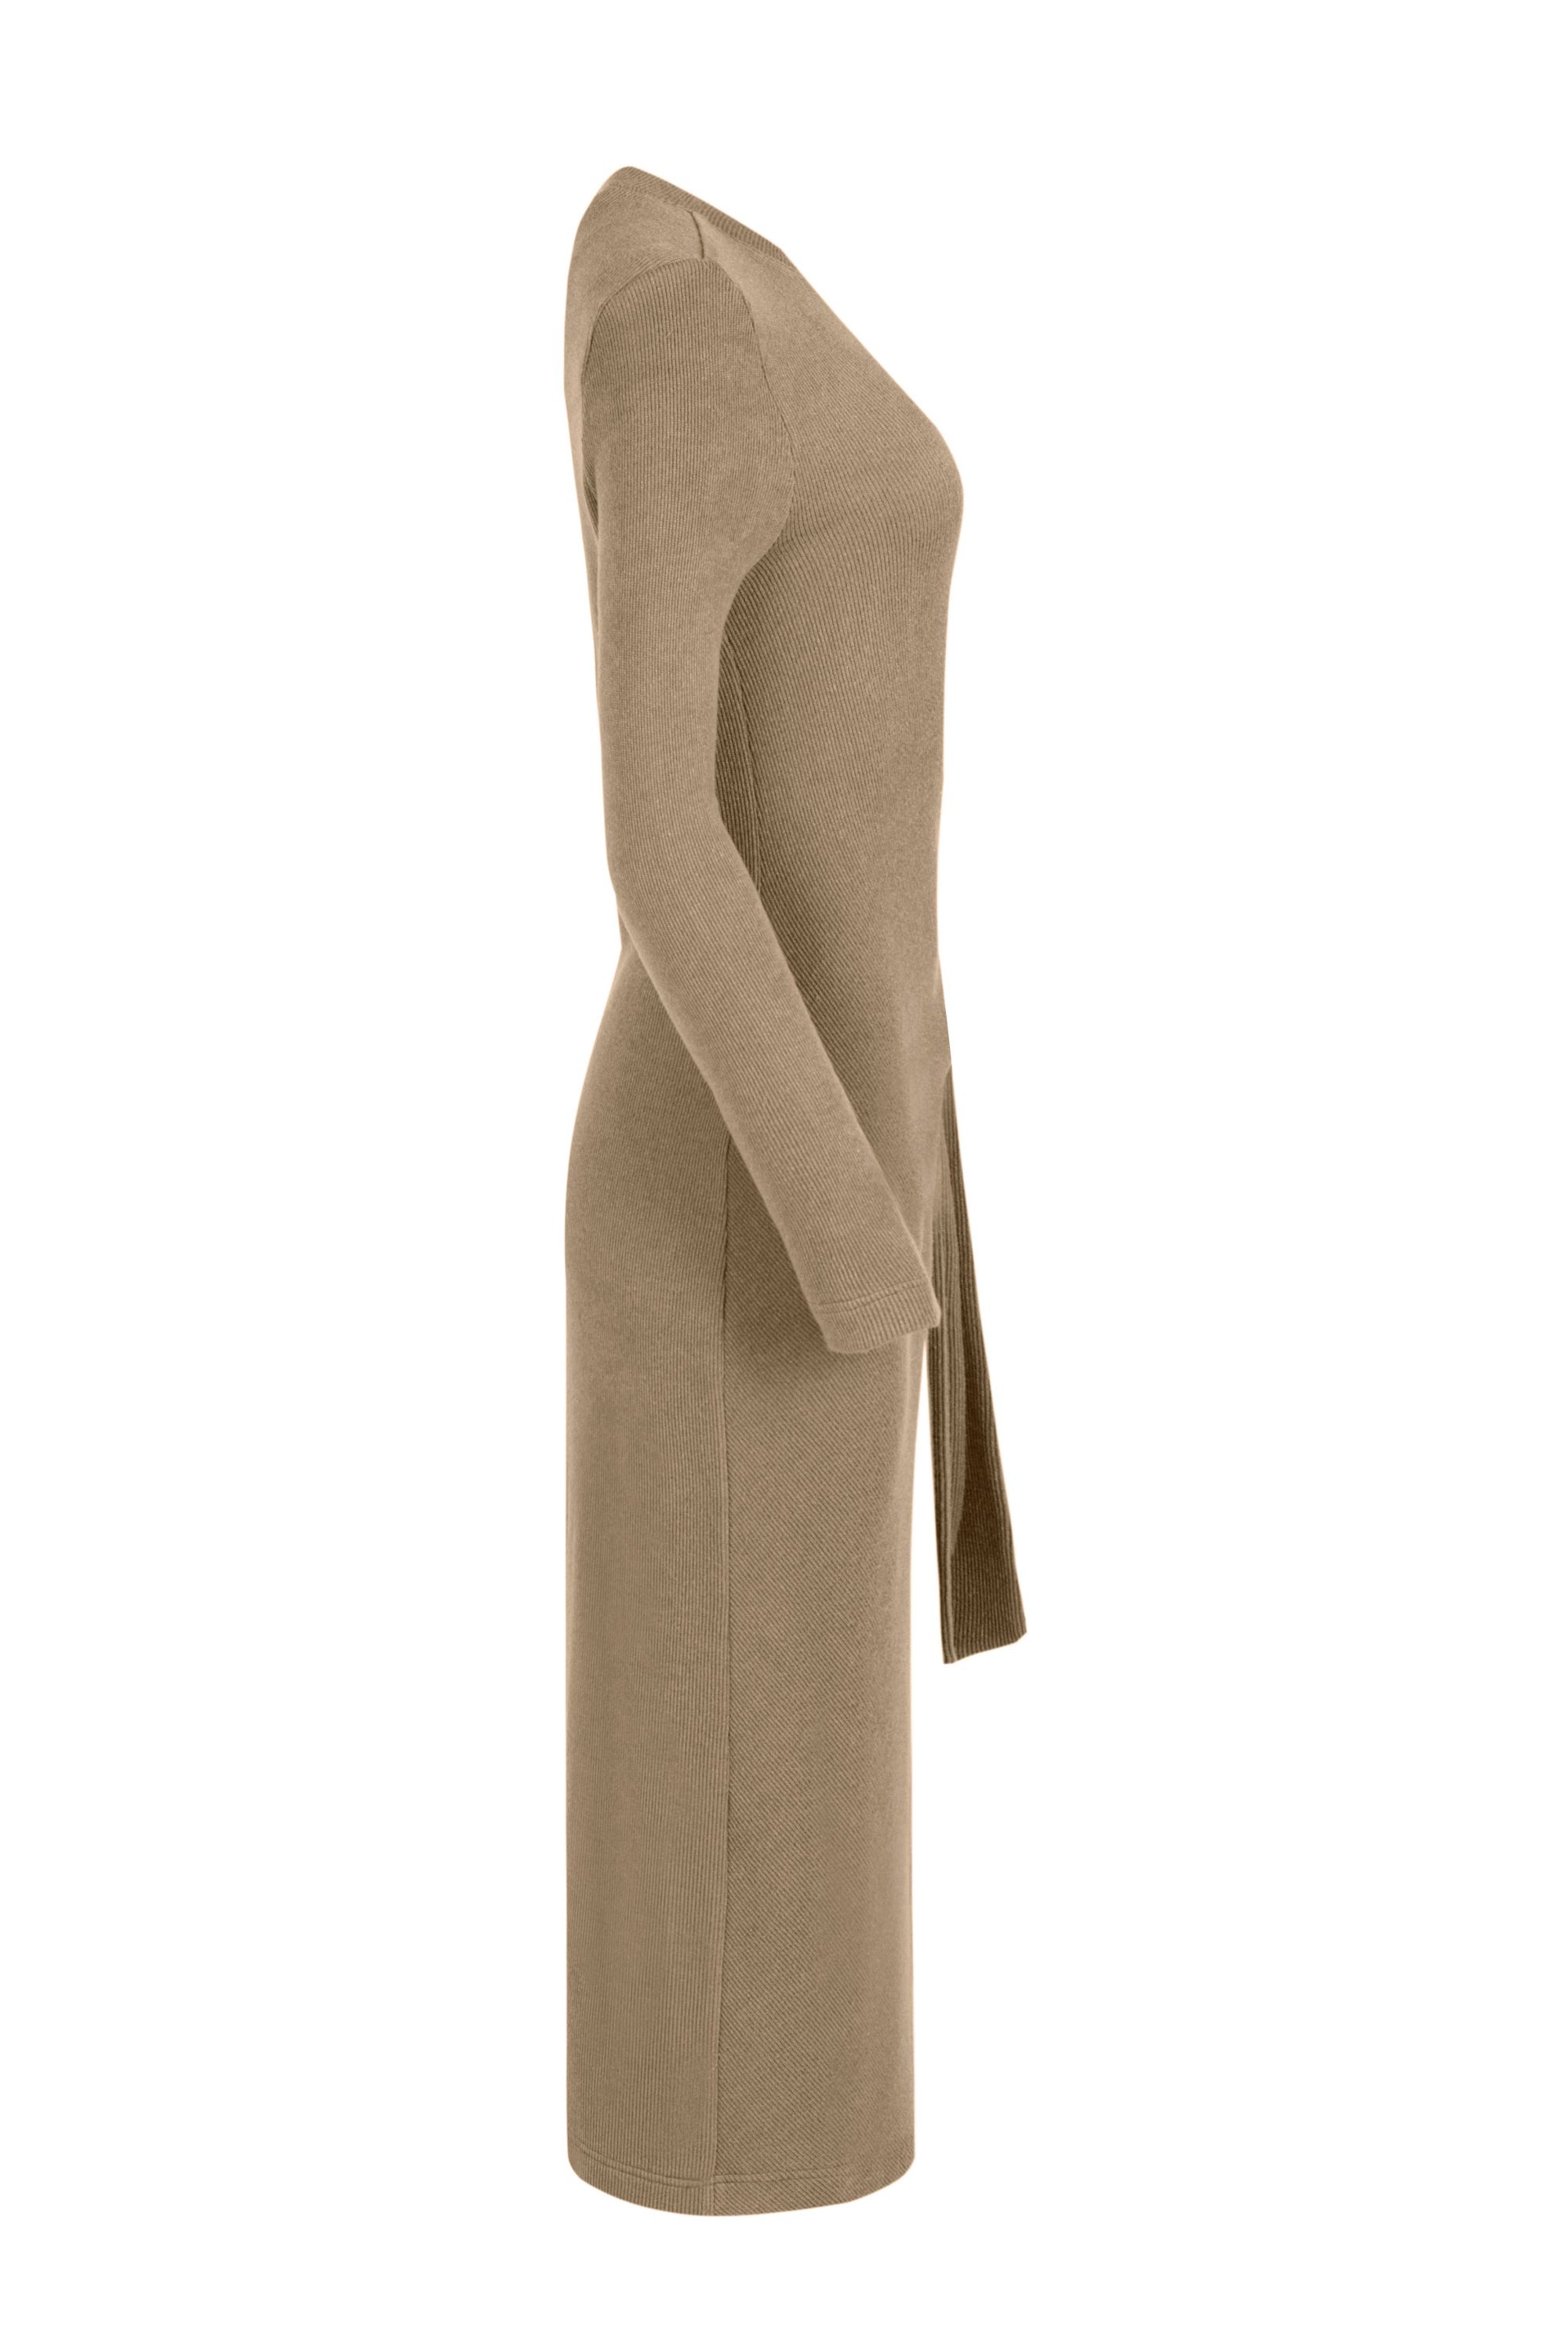 Платье женское 5К-12258-1